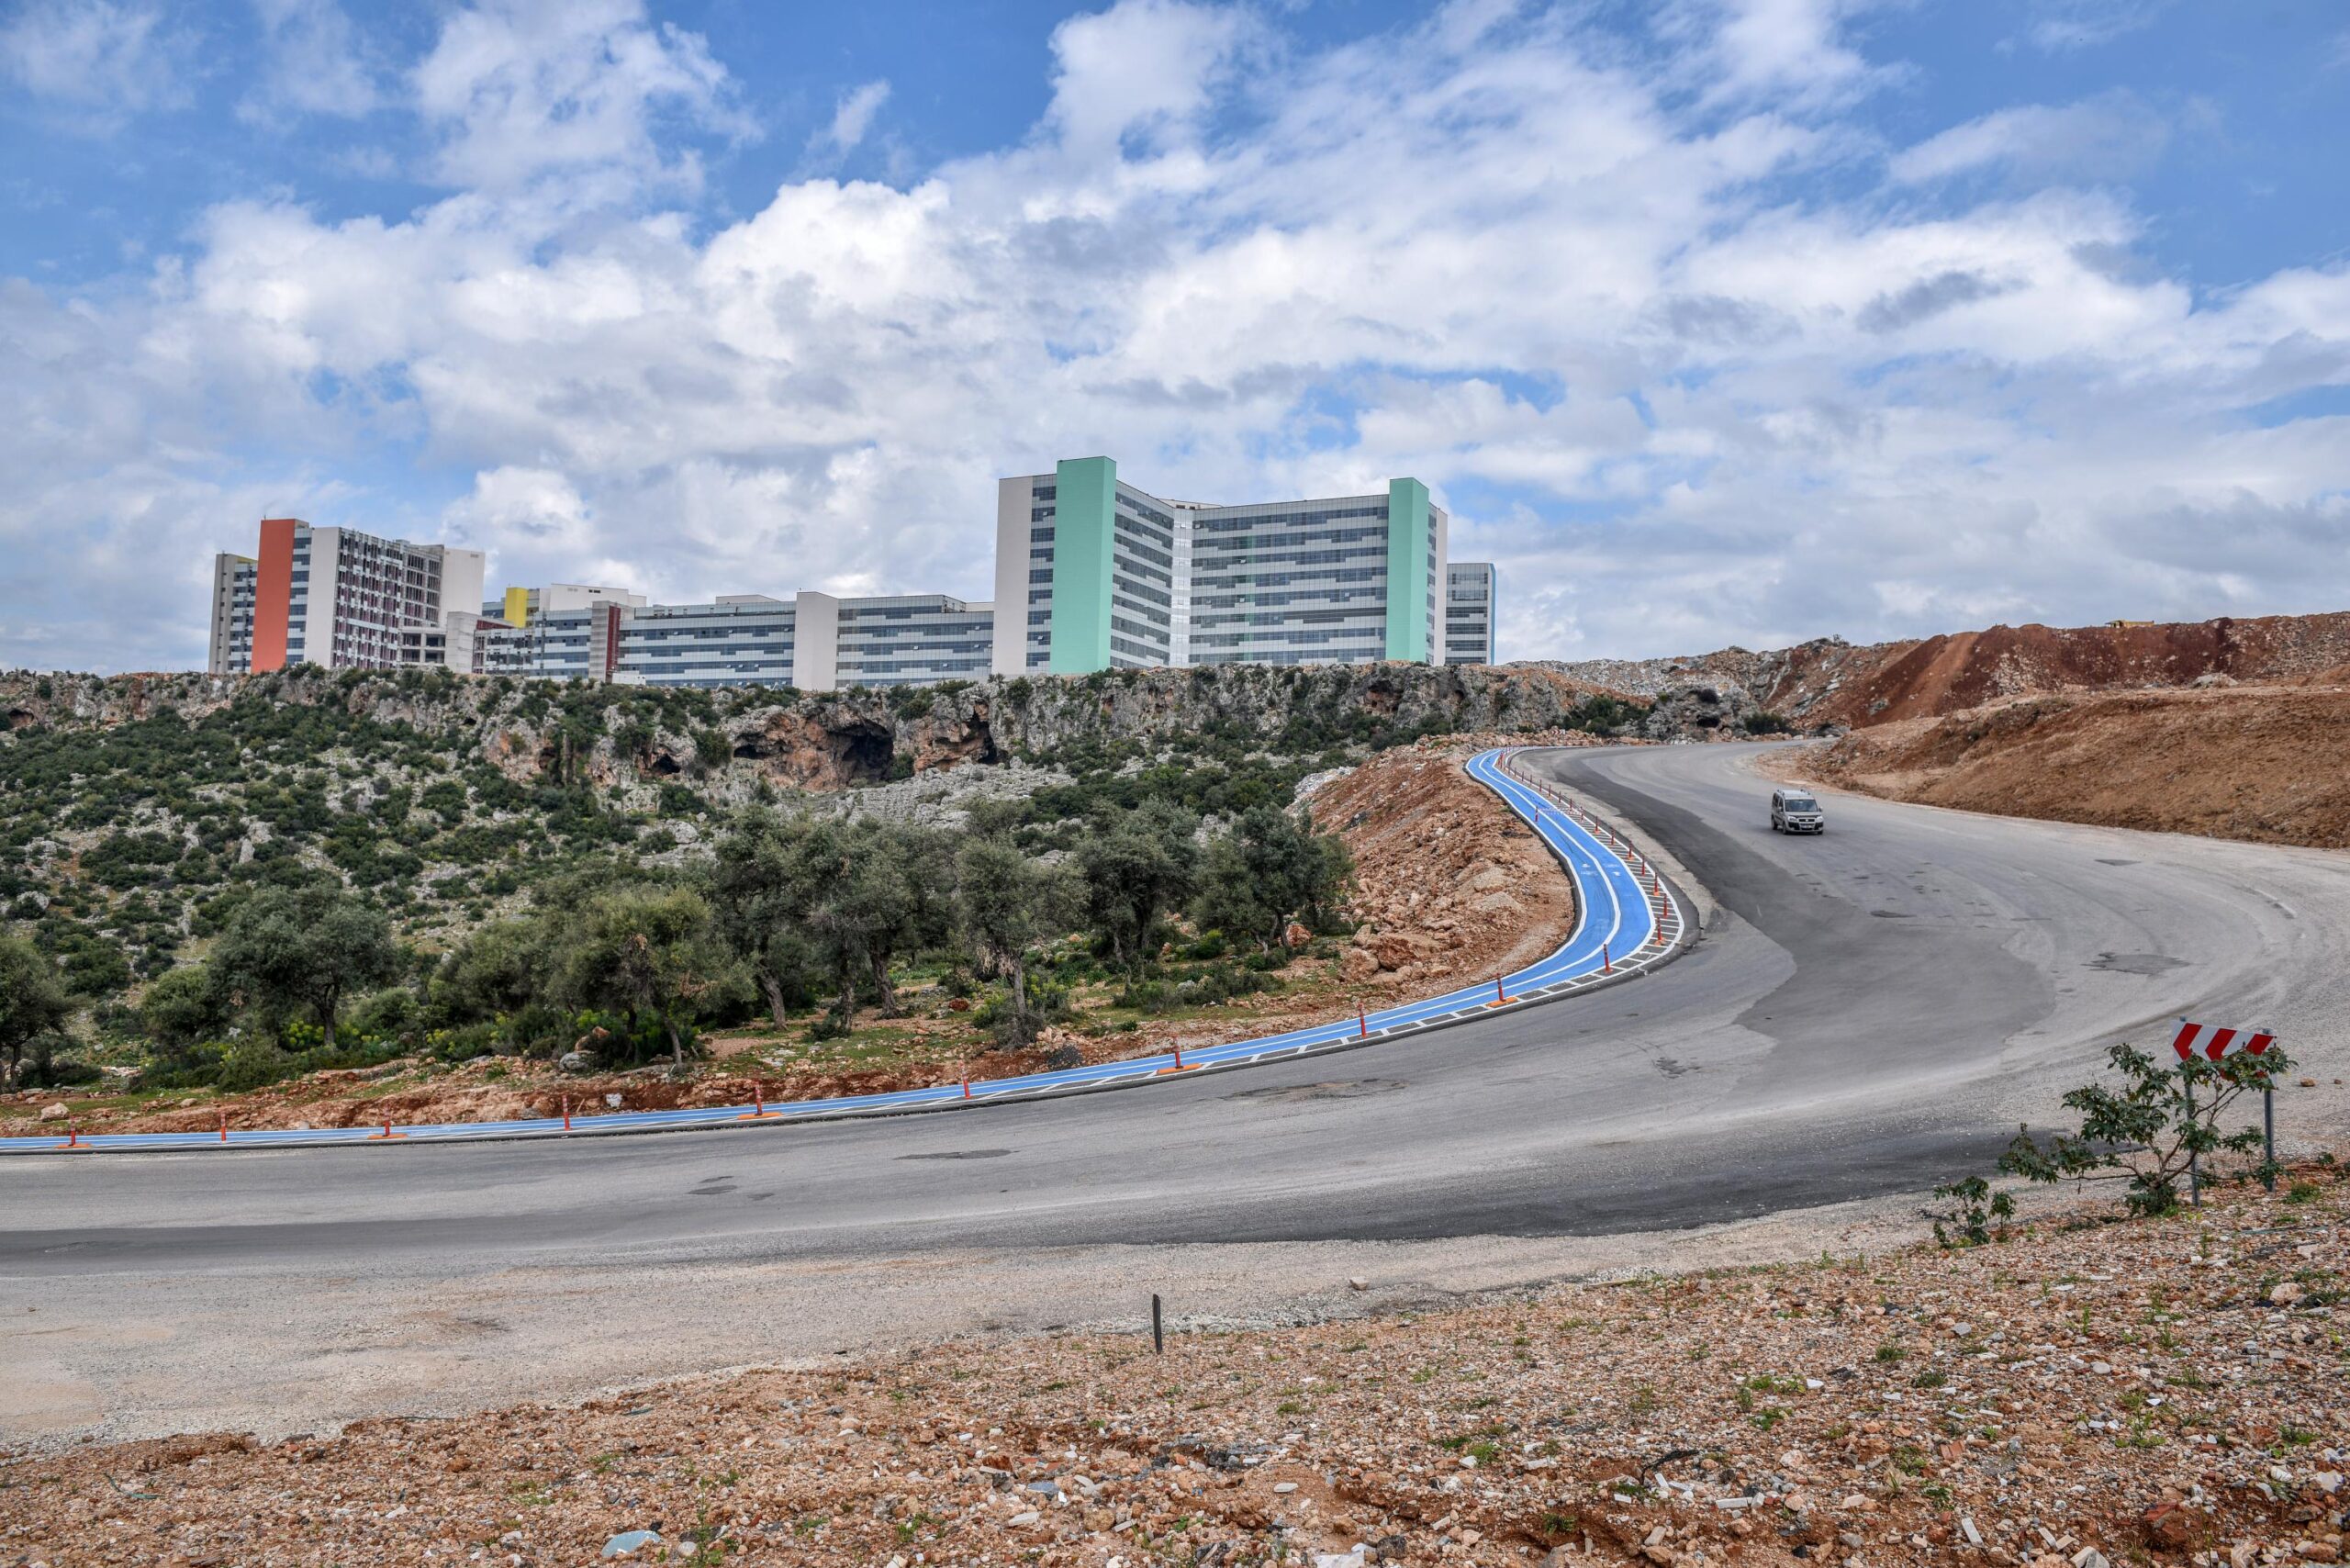 Kepez Belediyesi, Göçerler Mahallesi’nde inşa edilen 1100 yataklı Antalya Şehir Hastanesi’ne ilçenin dört bir yanından ulaşım sağlanabilmesi için bölgede 11 km yol açtı. yol